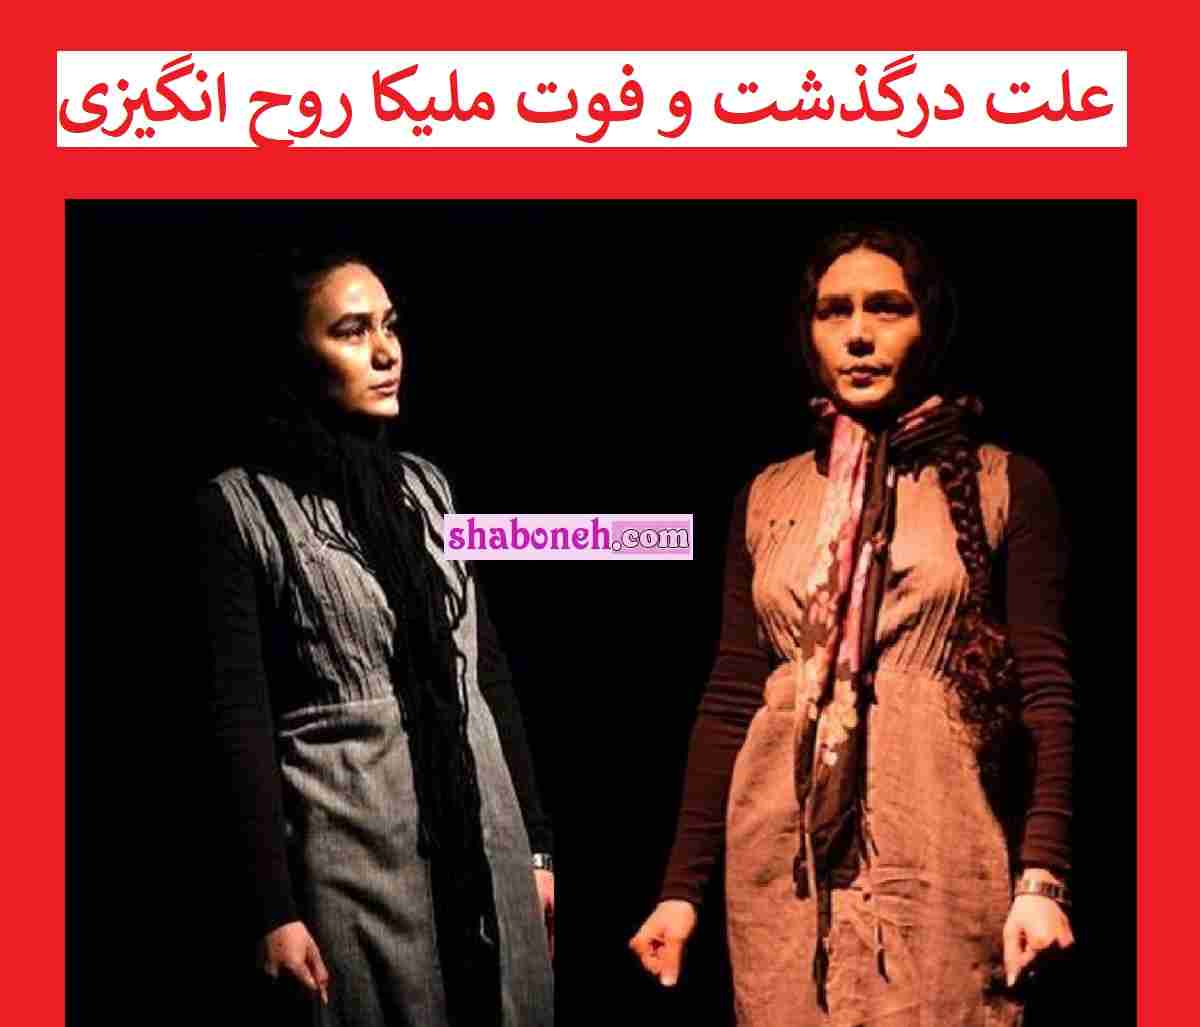 علت مرگ ملیکا روحنوزی بازیگر صحنه تئاتر خودکشی اعلام